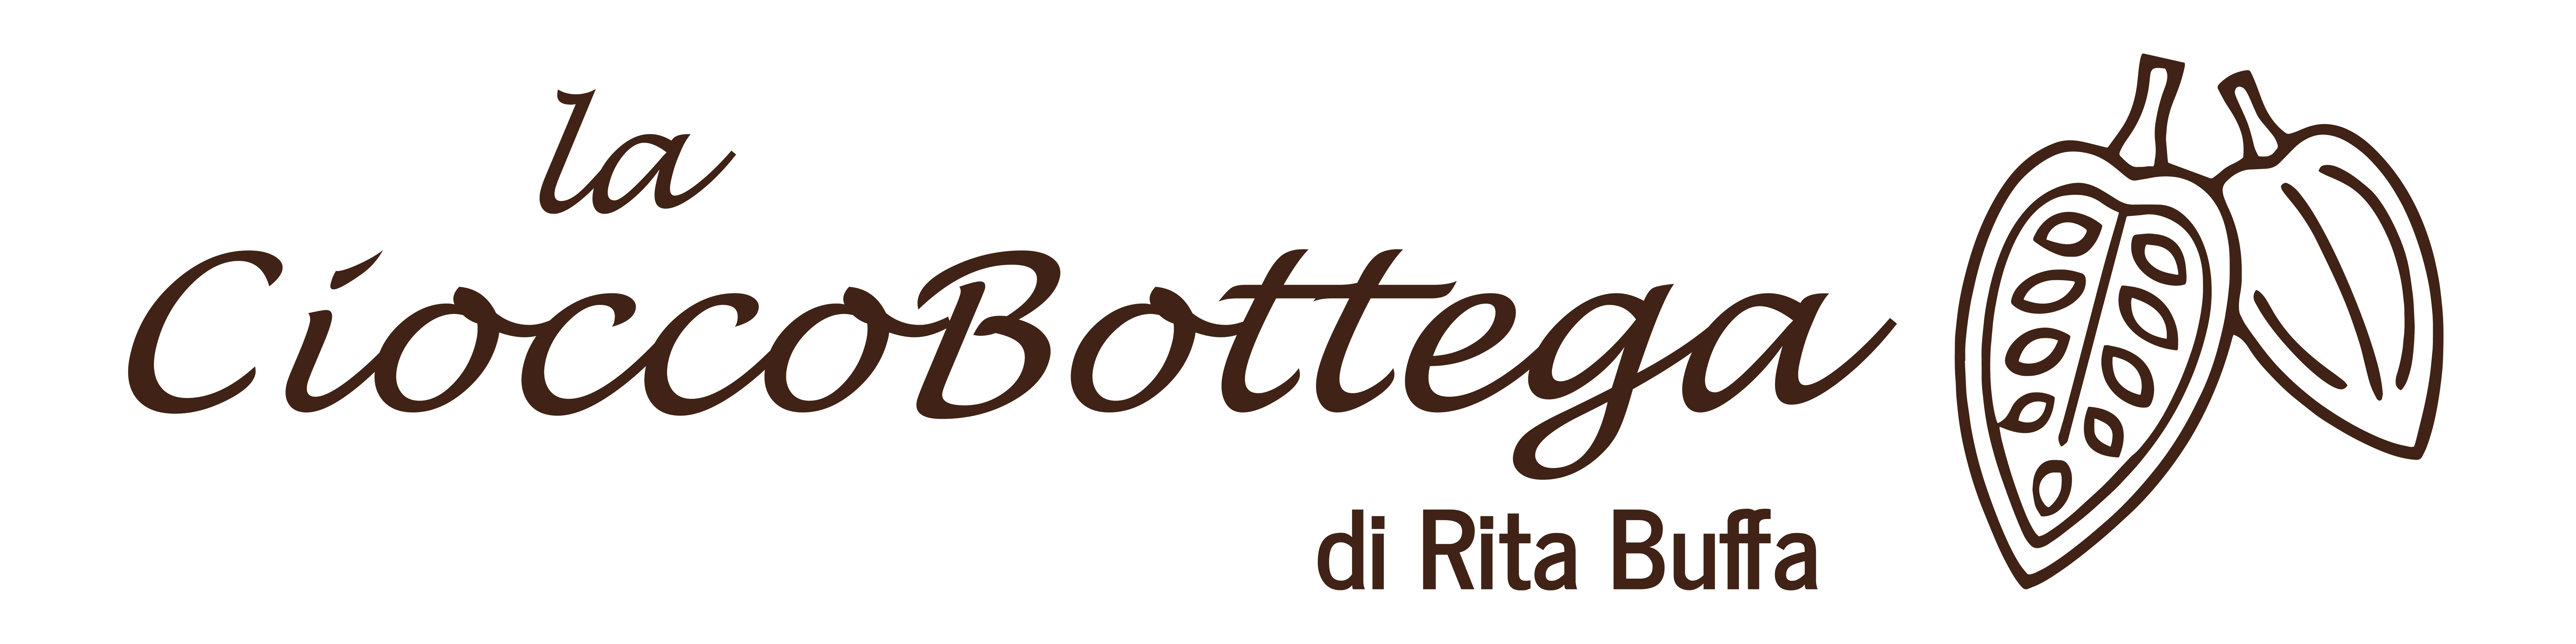 La CioccoBottega di Rita Buffa